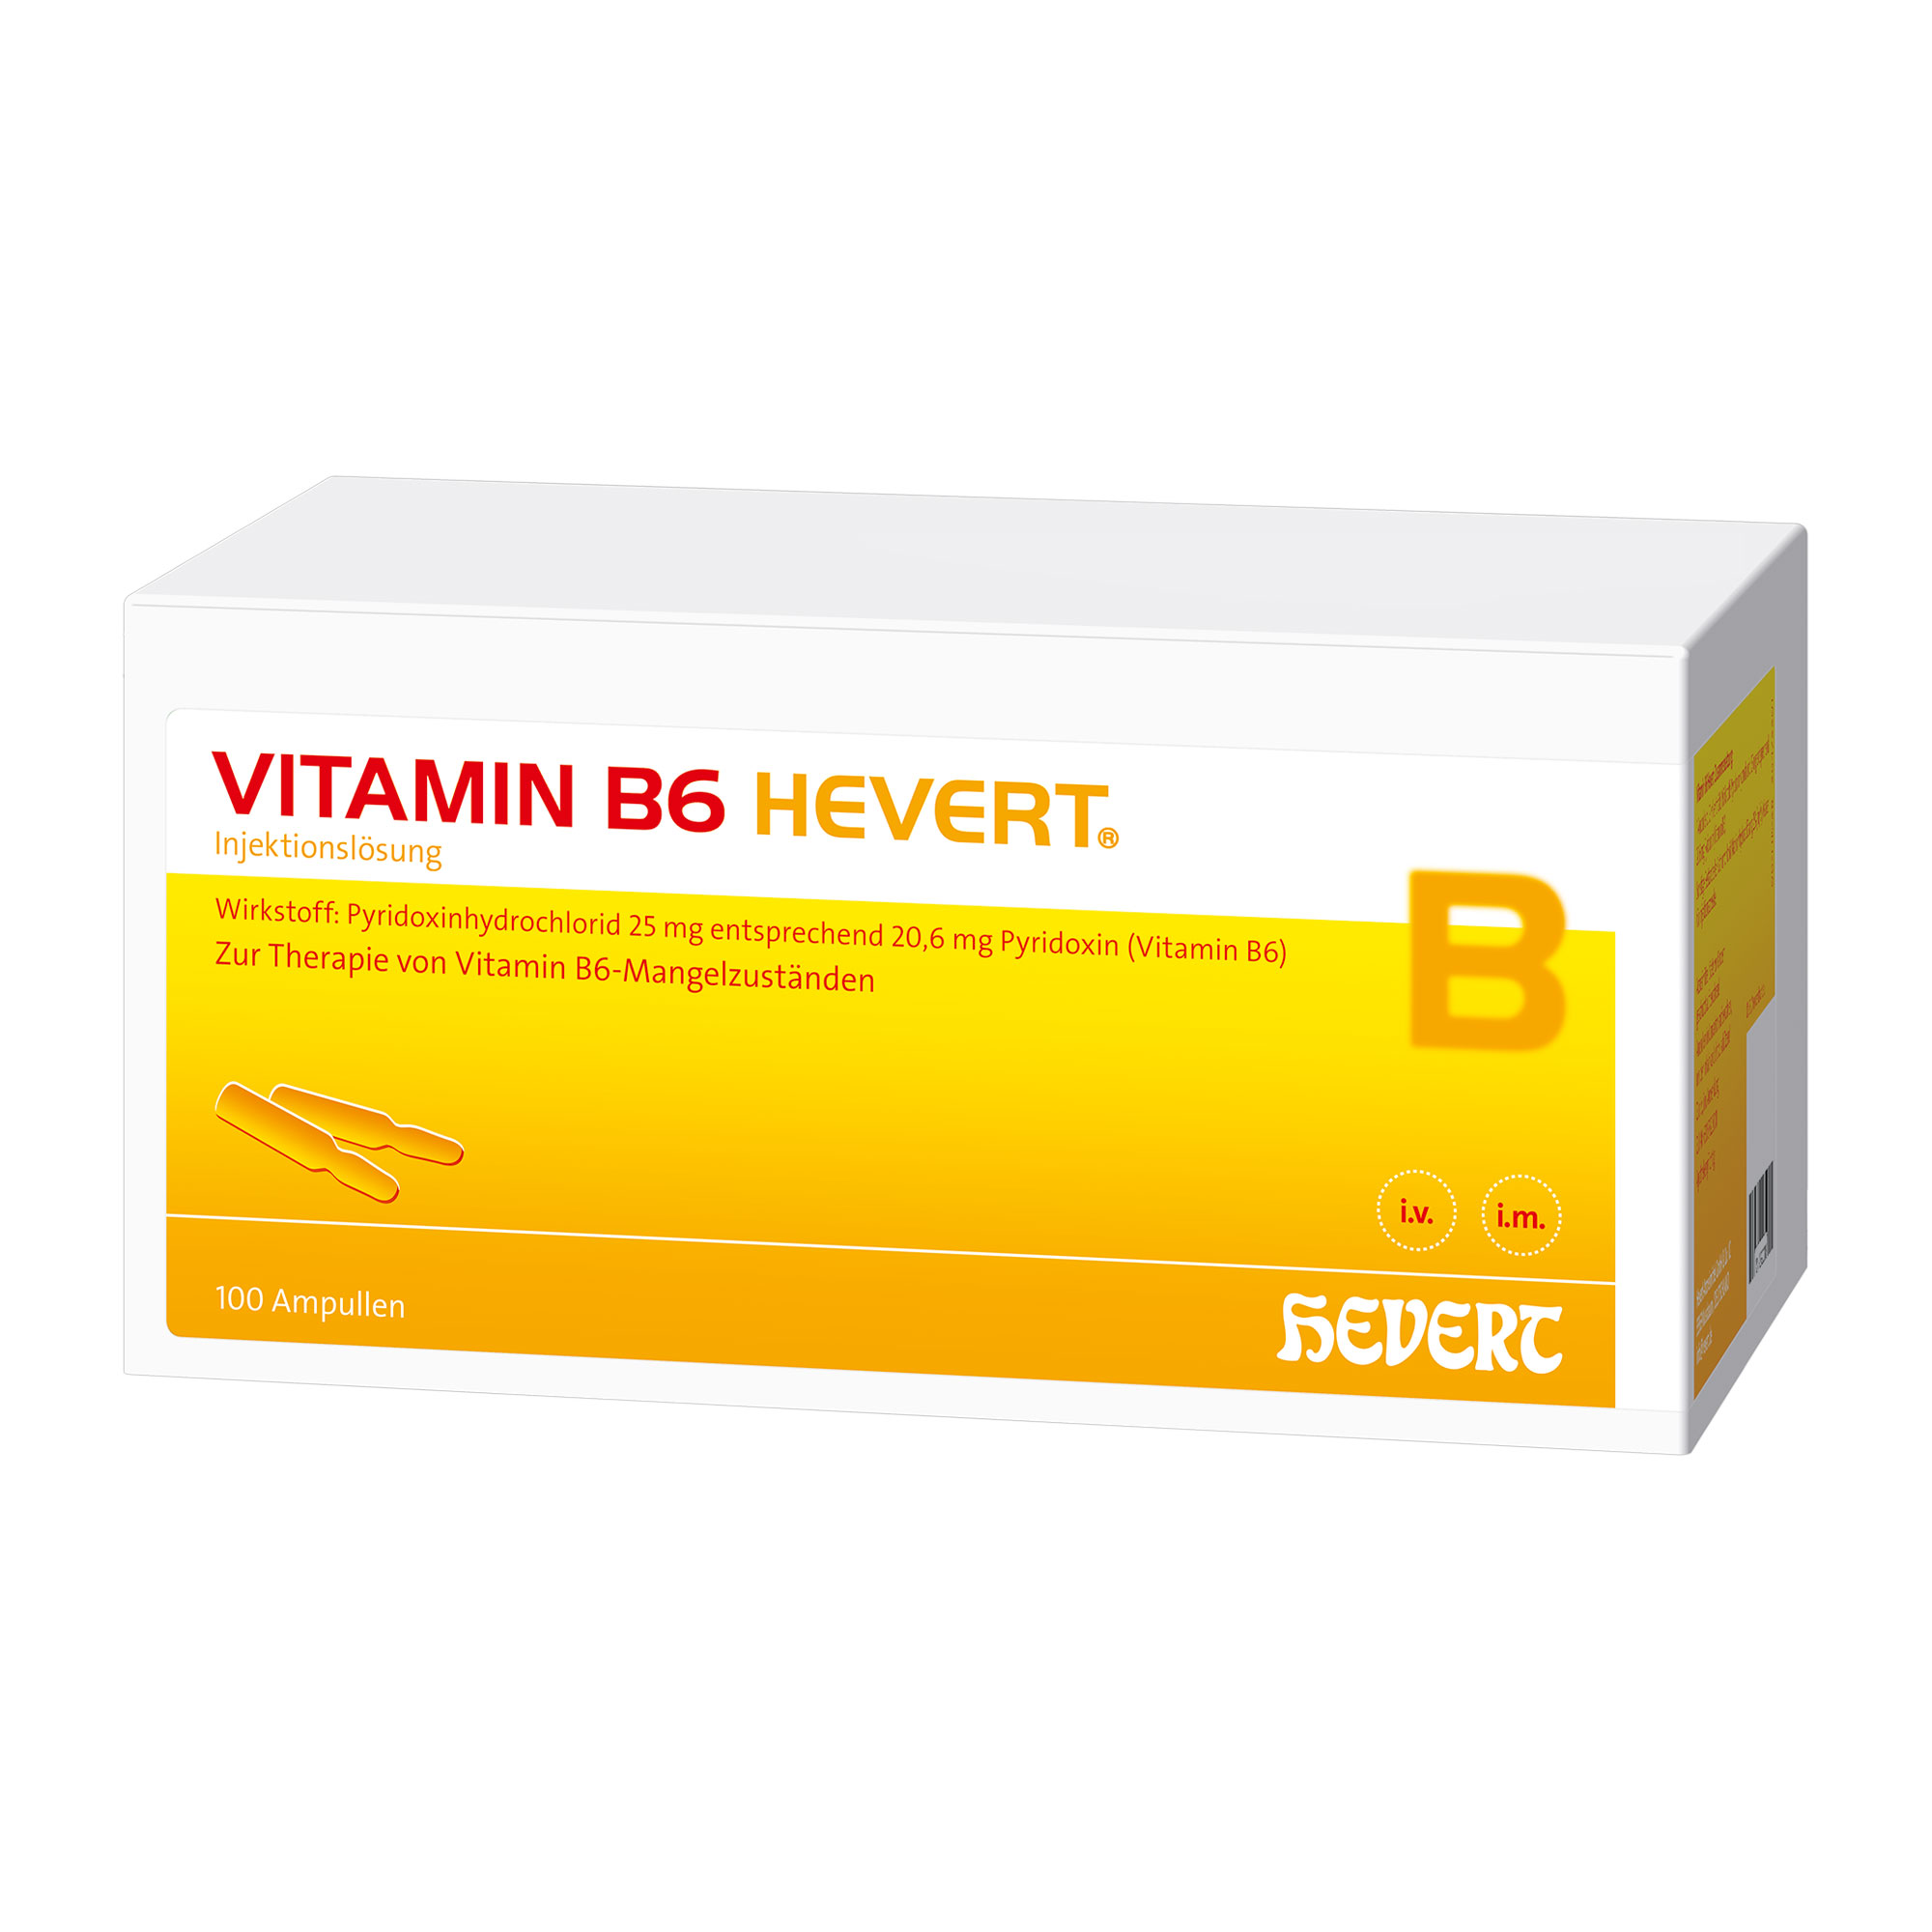 Vitaminpräparat zur Behandlung eines Vitamin B6-Mangels.